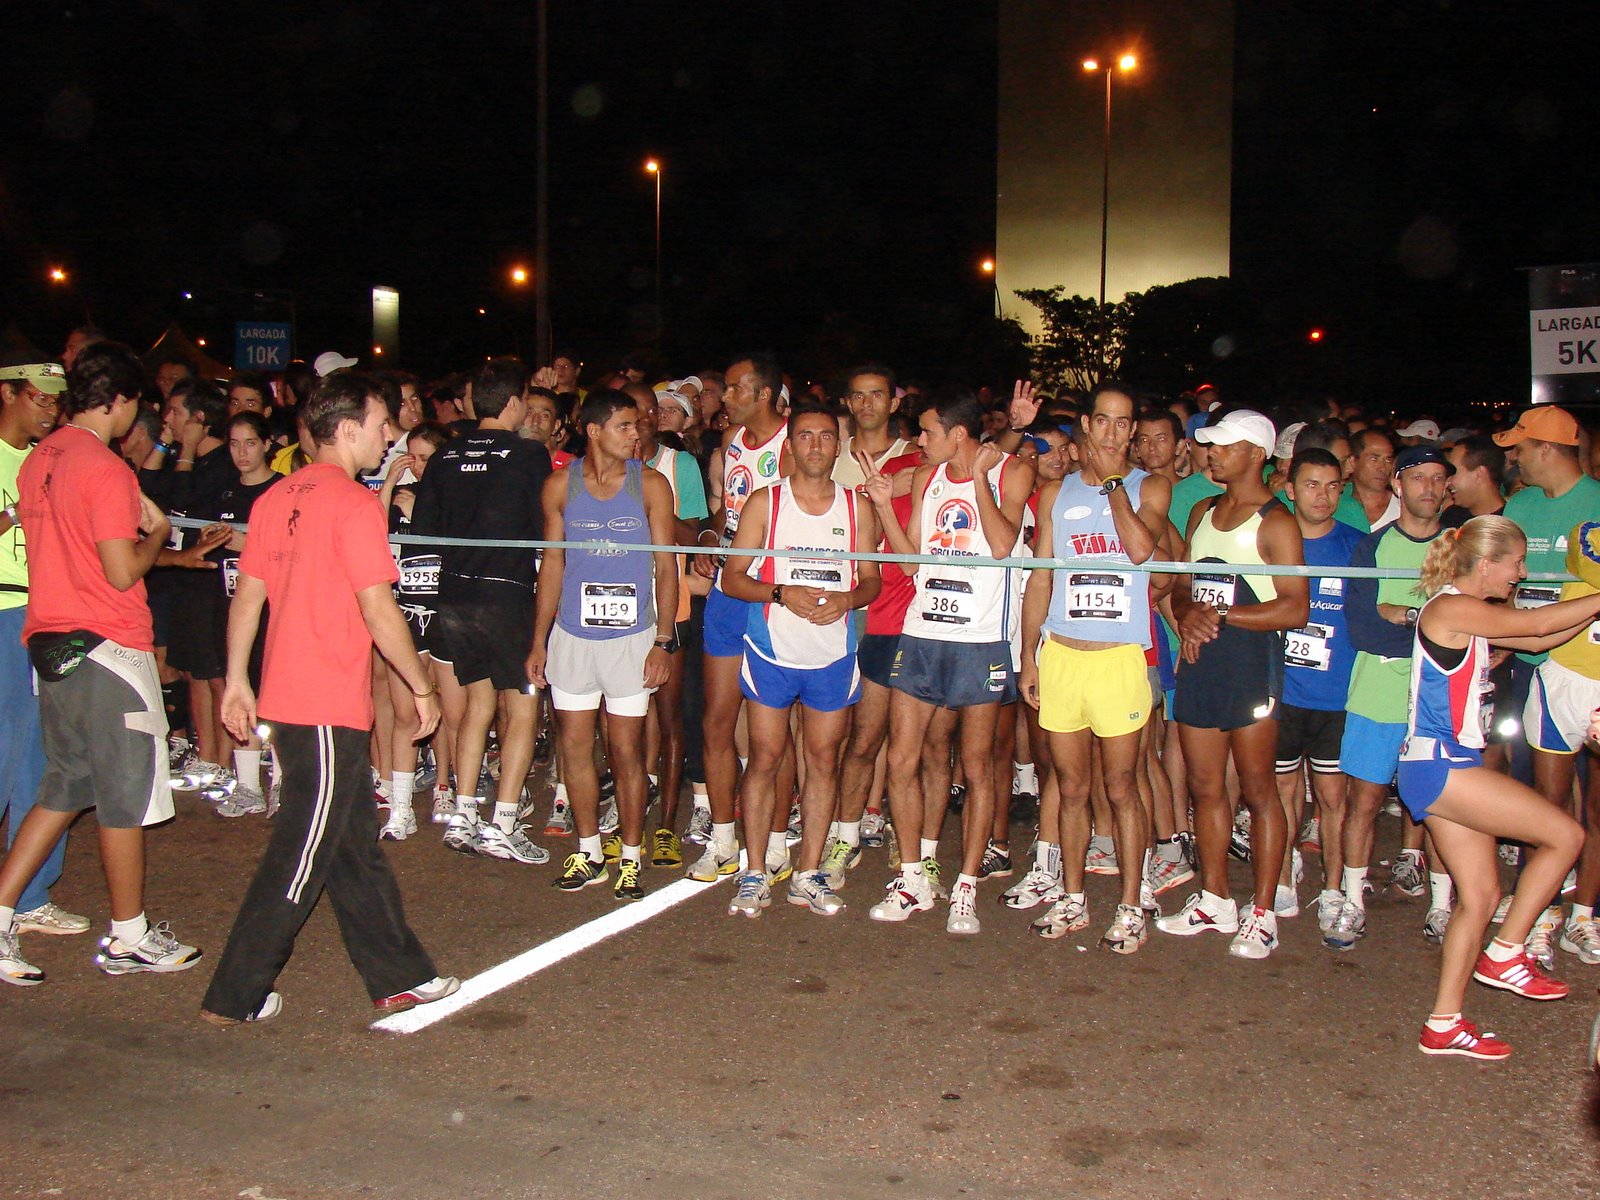 Fila Night Run, circuito de corrida noturna, chega a Brasília e arrasta cada vez mais adeptos